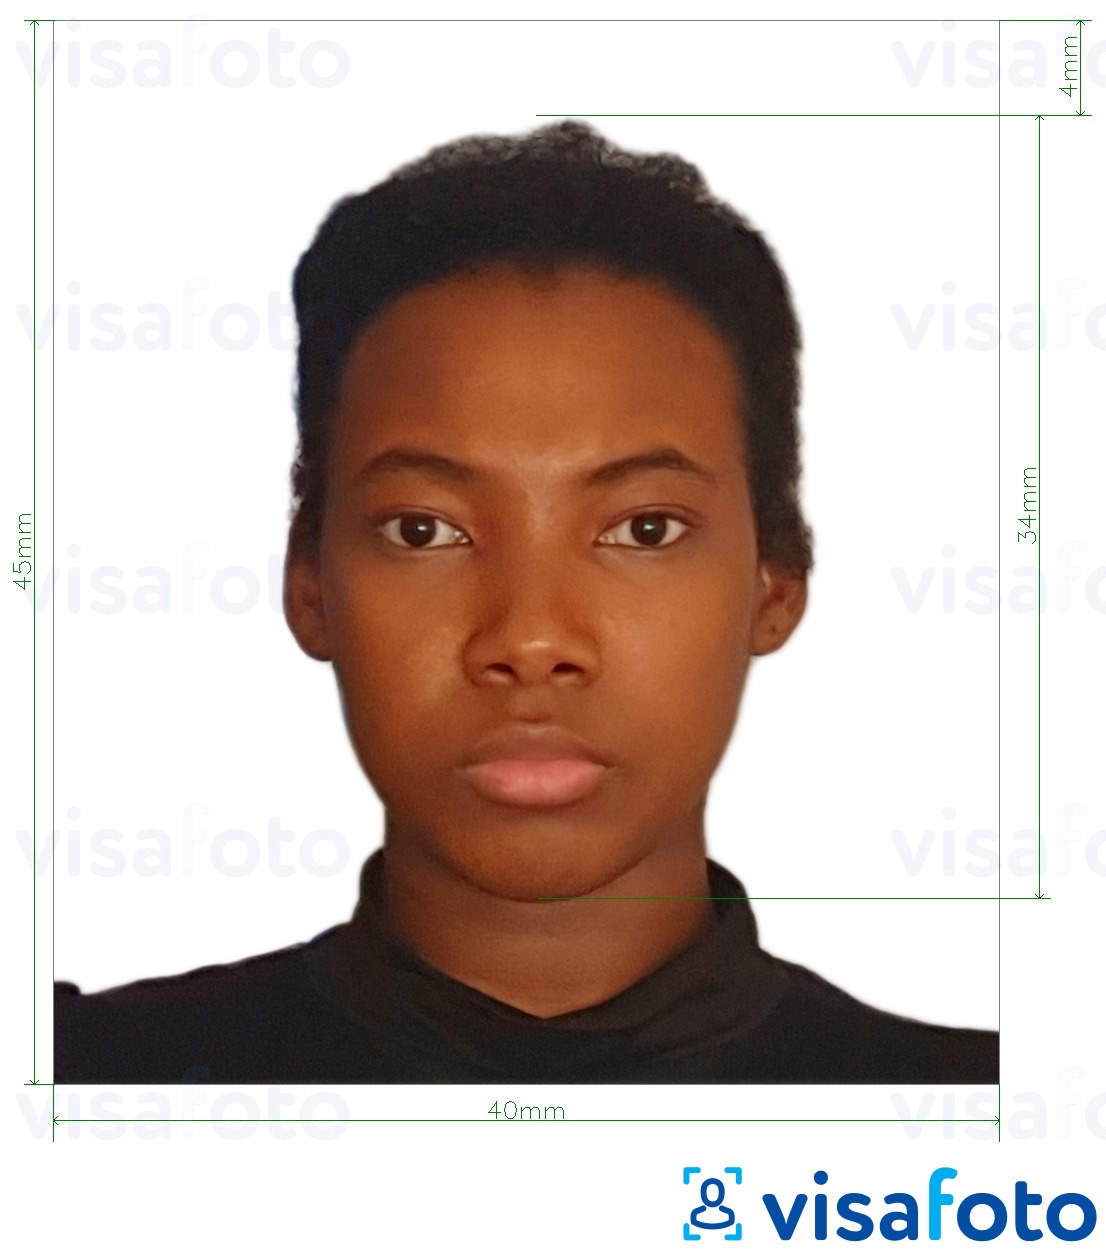 Ejemplo de foto para Visa de Tanzania 40x45 mm (4x4.5 cm) con la especificación del tamaño exacto